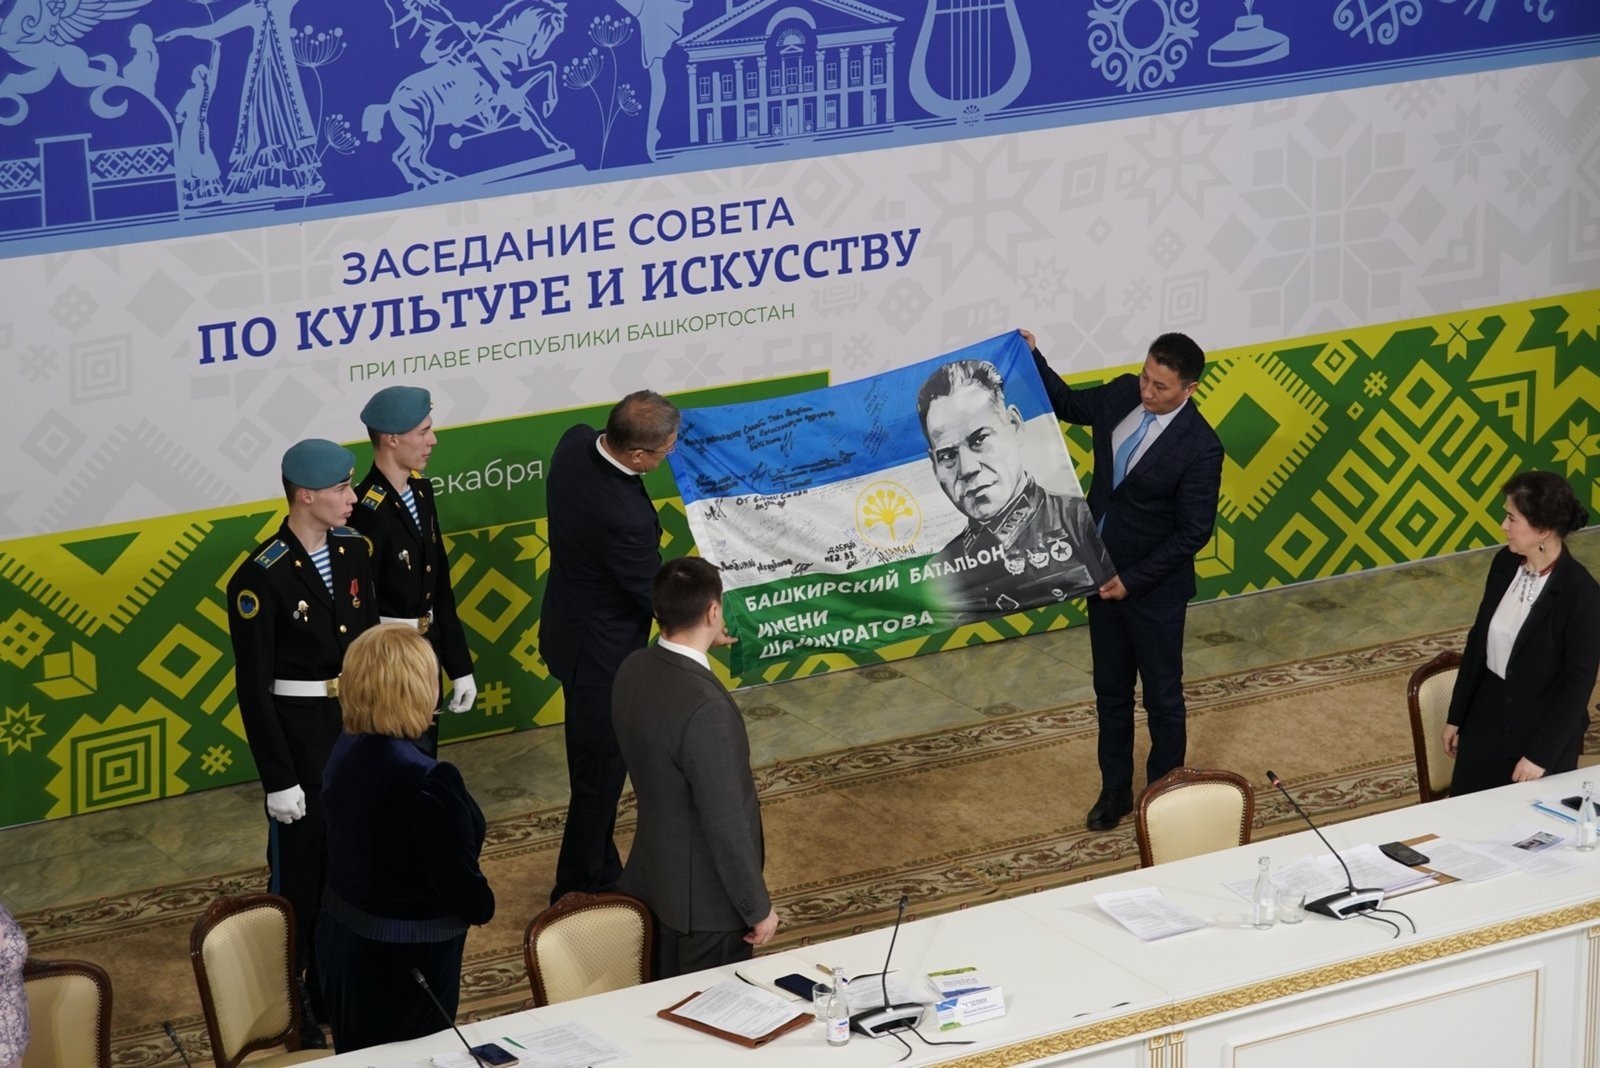 Радий Хабиров передал флаг башкирского добровольческого батальона имени Шаймуратова в Национальный музей республики